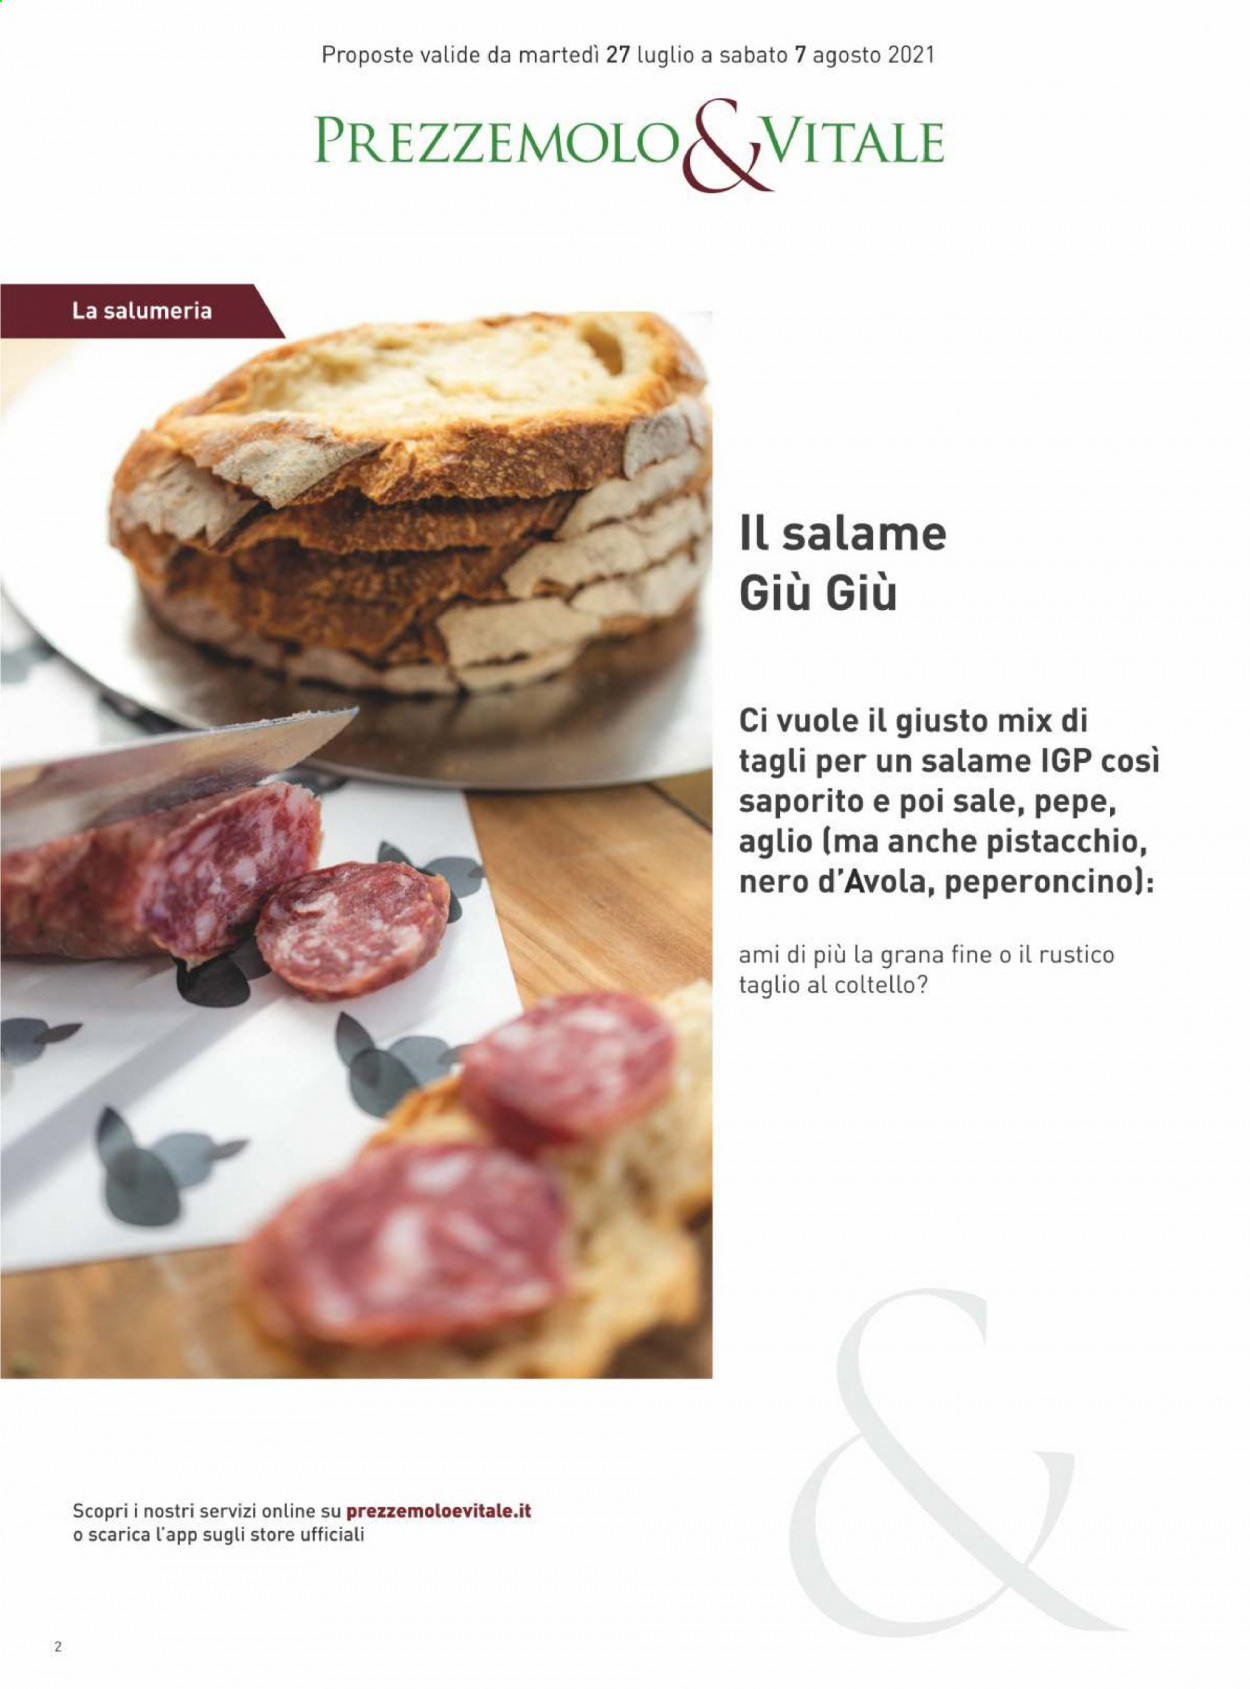 thumbnail - Volantino Prezzemolo & Vitale - 27/7/2021 - 7/8/2021 - Prodotti in offerta - aglio, salame, peperoncino, vino rosso, Nero d'Avola, vino. Pagina 2.